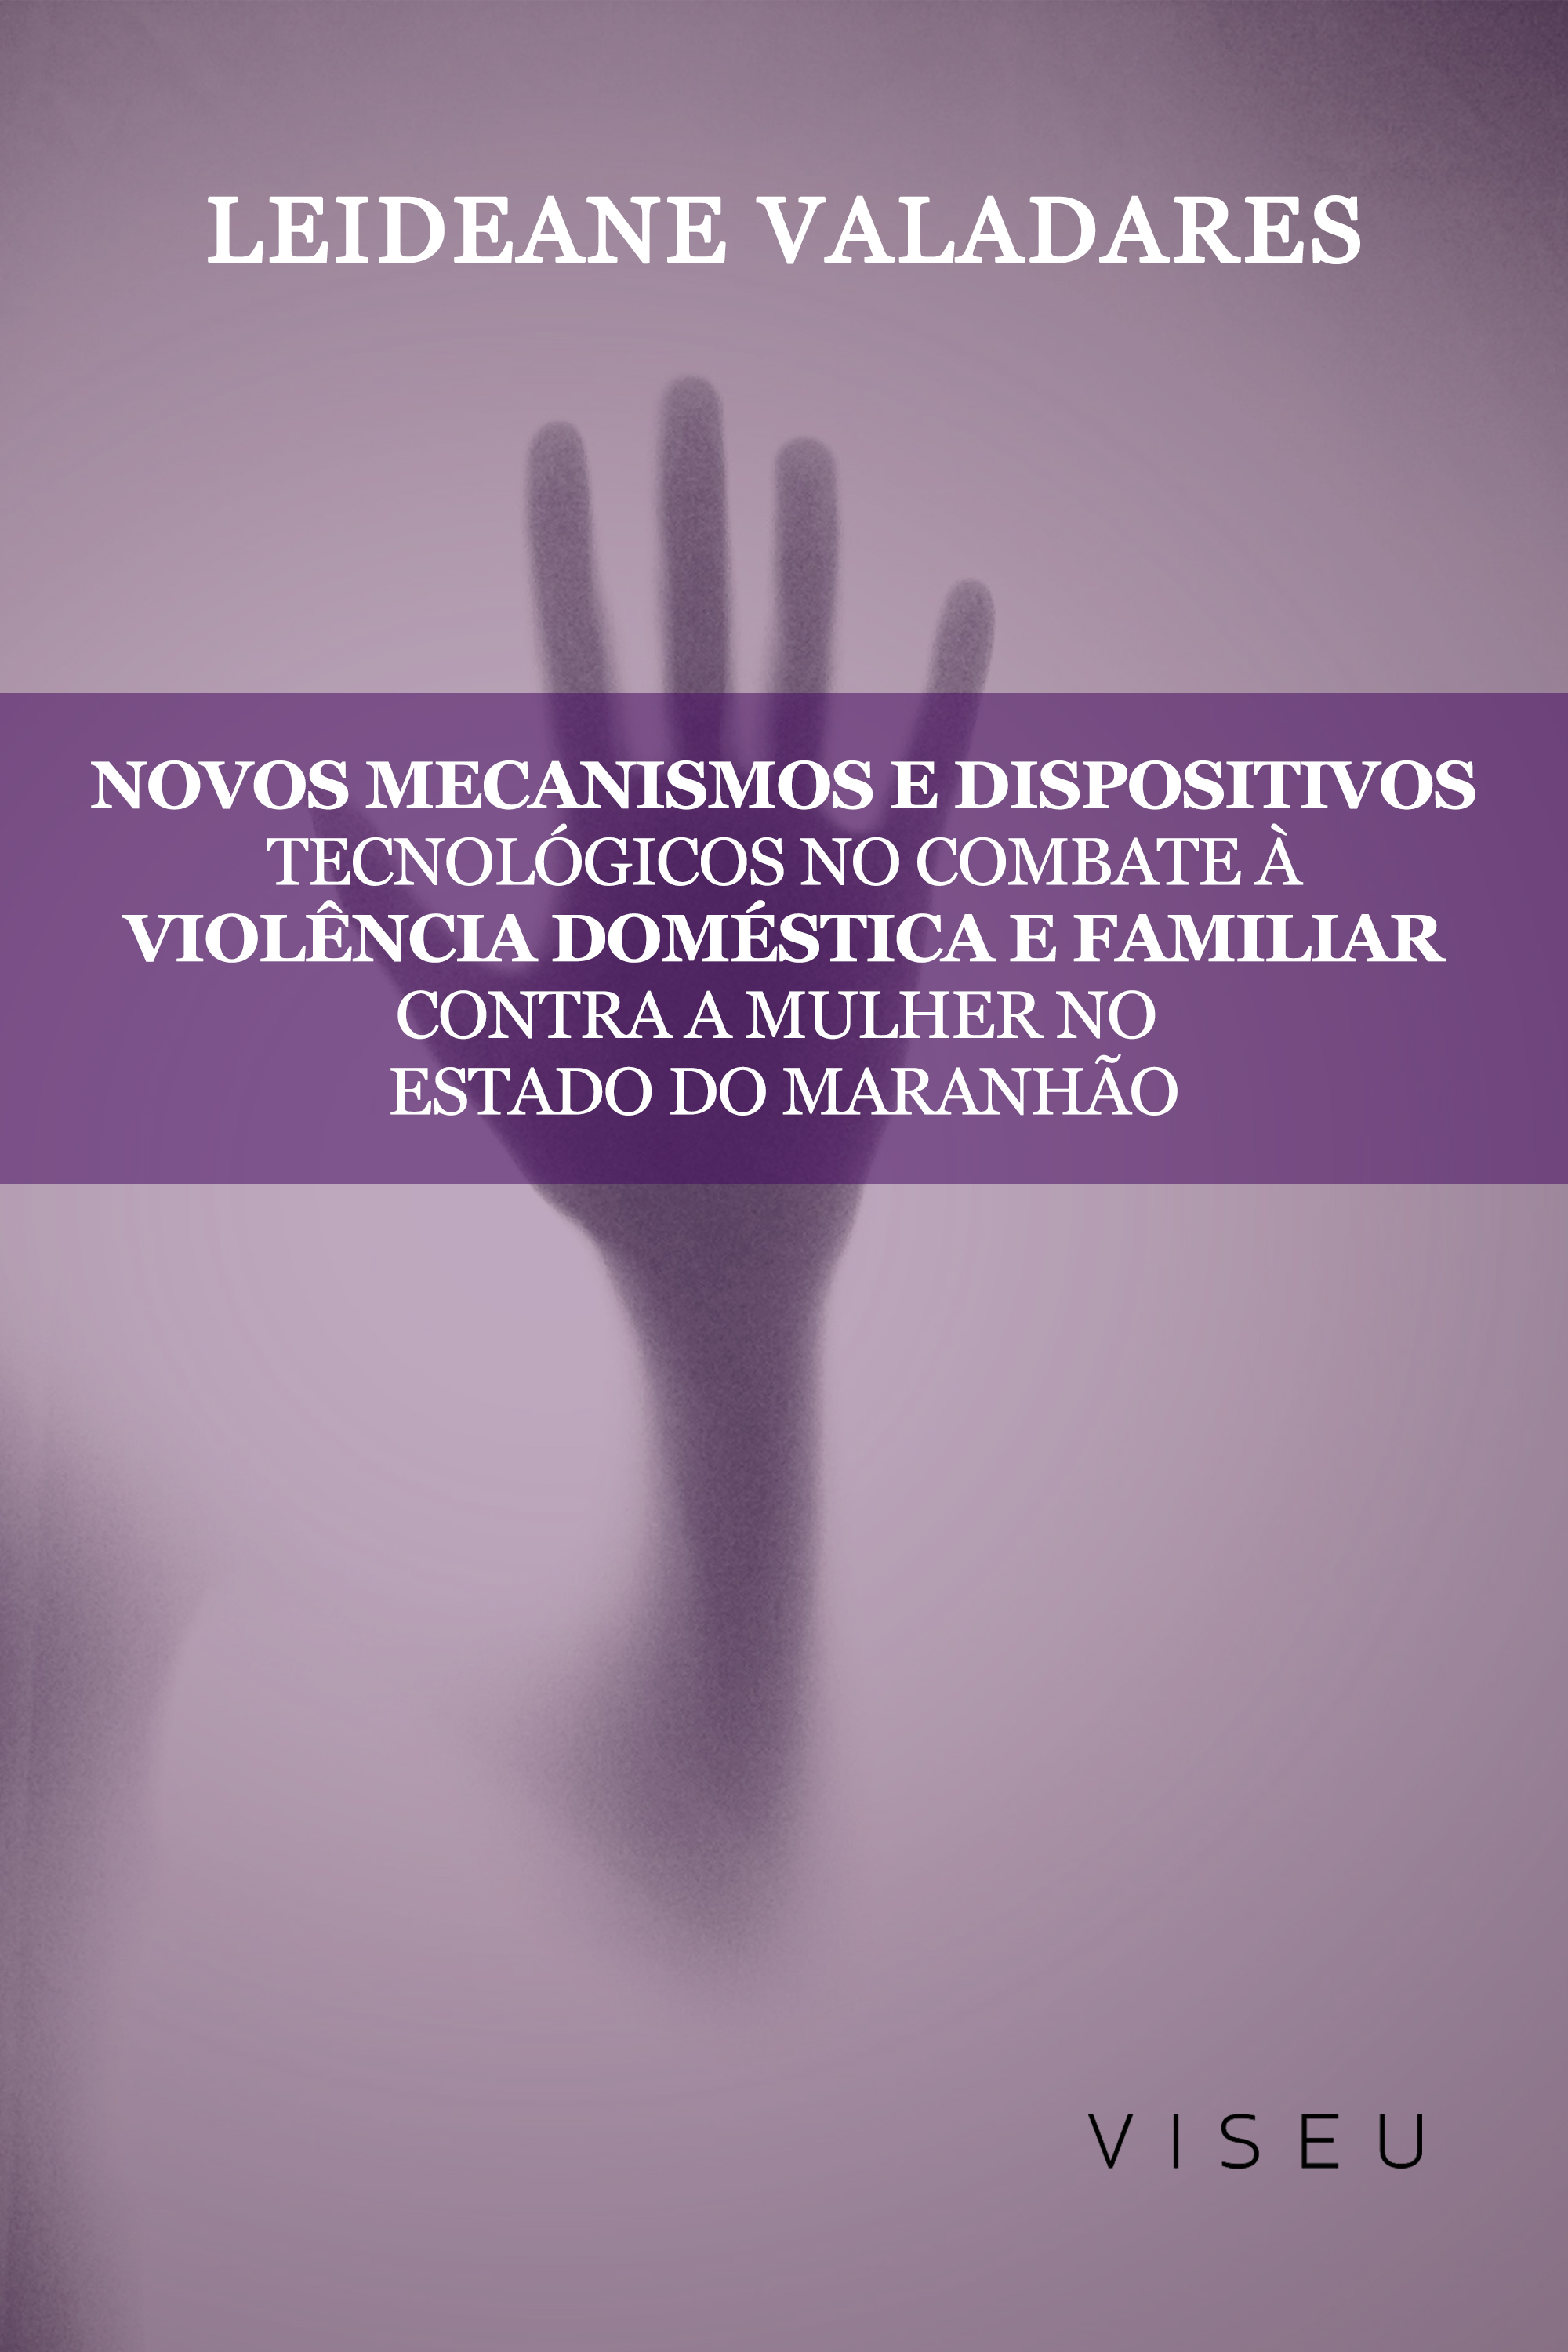 Novos mecanismos e dispositivos tecnológicos no combate à violência doméstica e familiar contra mulher no estado do Maranhão